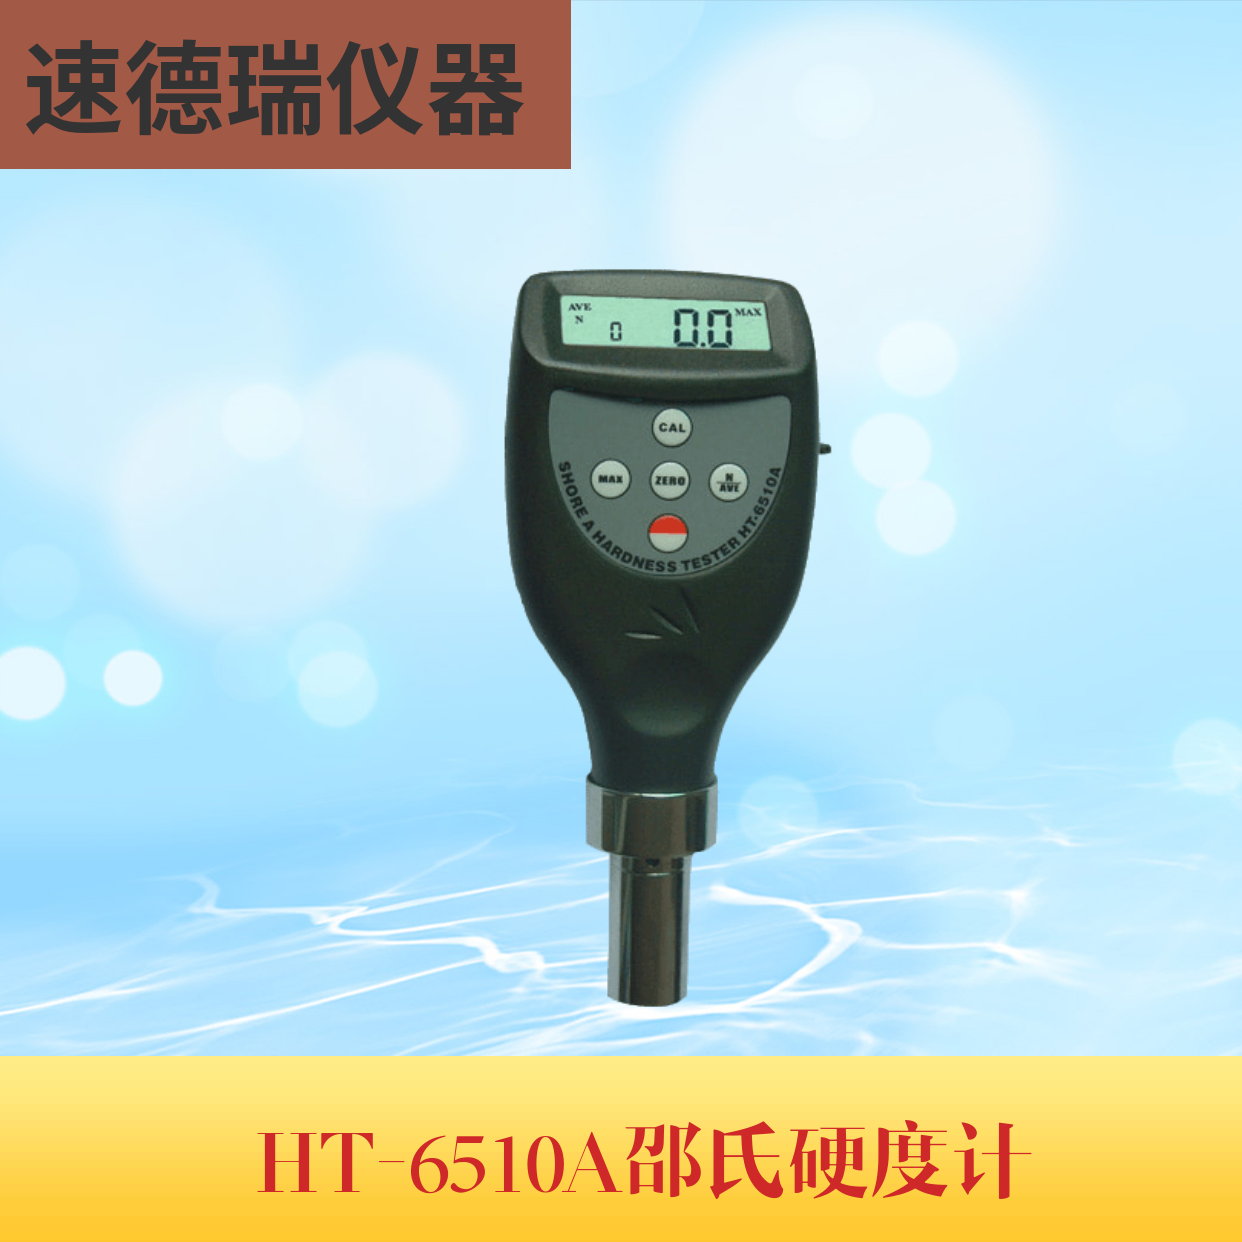 HT-6510A 邵式硬度計